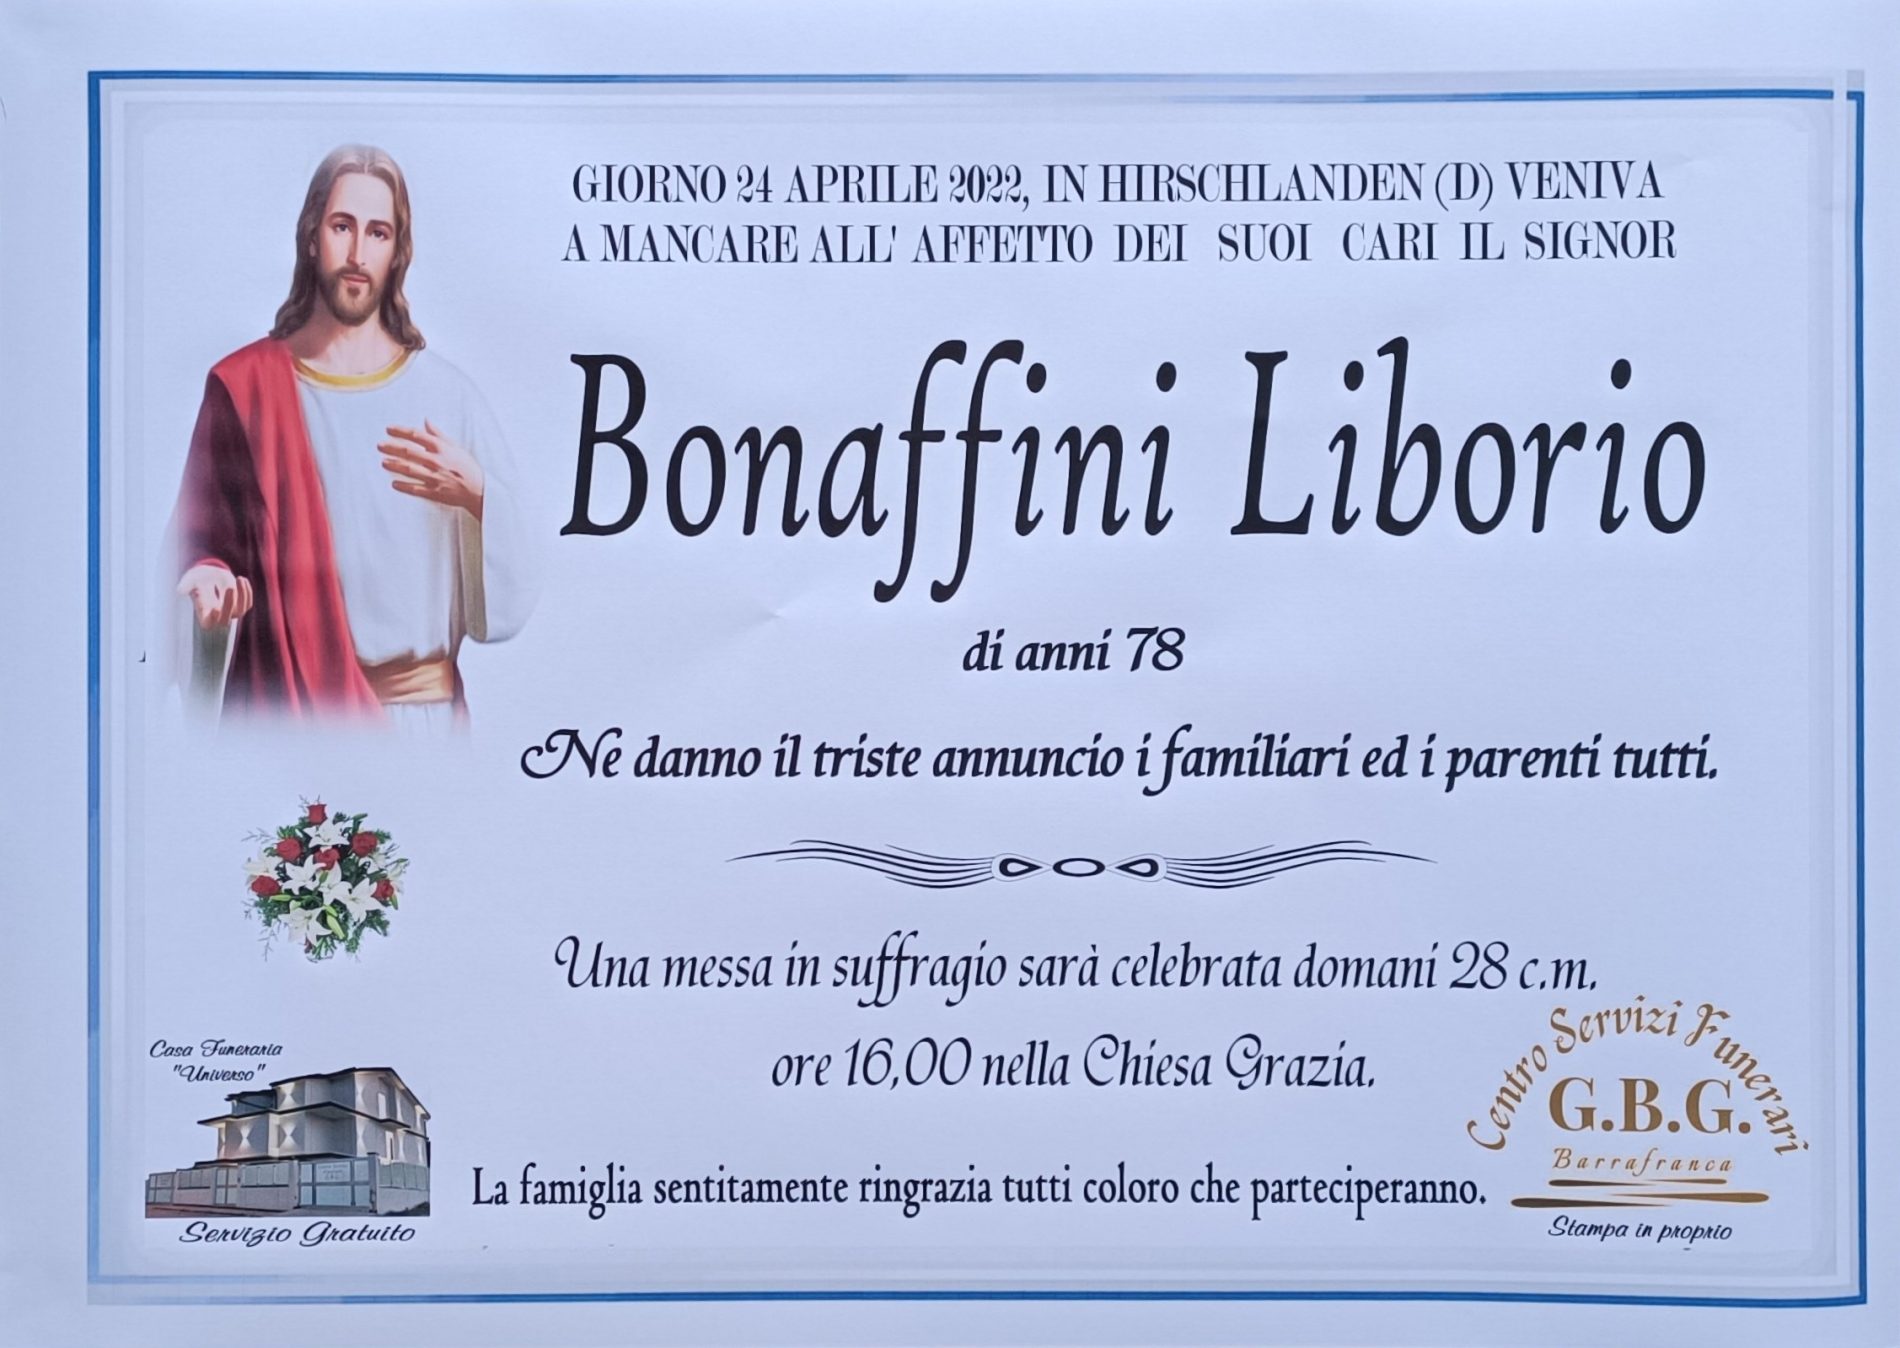 Annuncio servizi funerari agenzia G.B.G. sig Bonaffini Liborio di anni 78